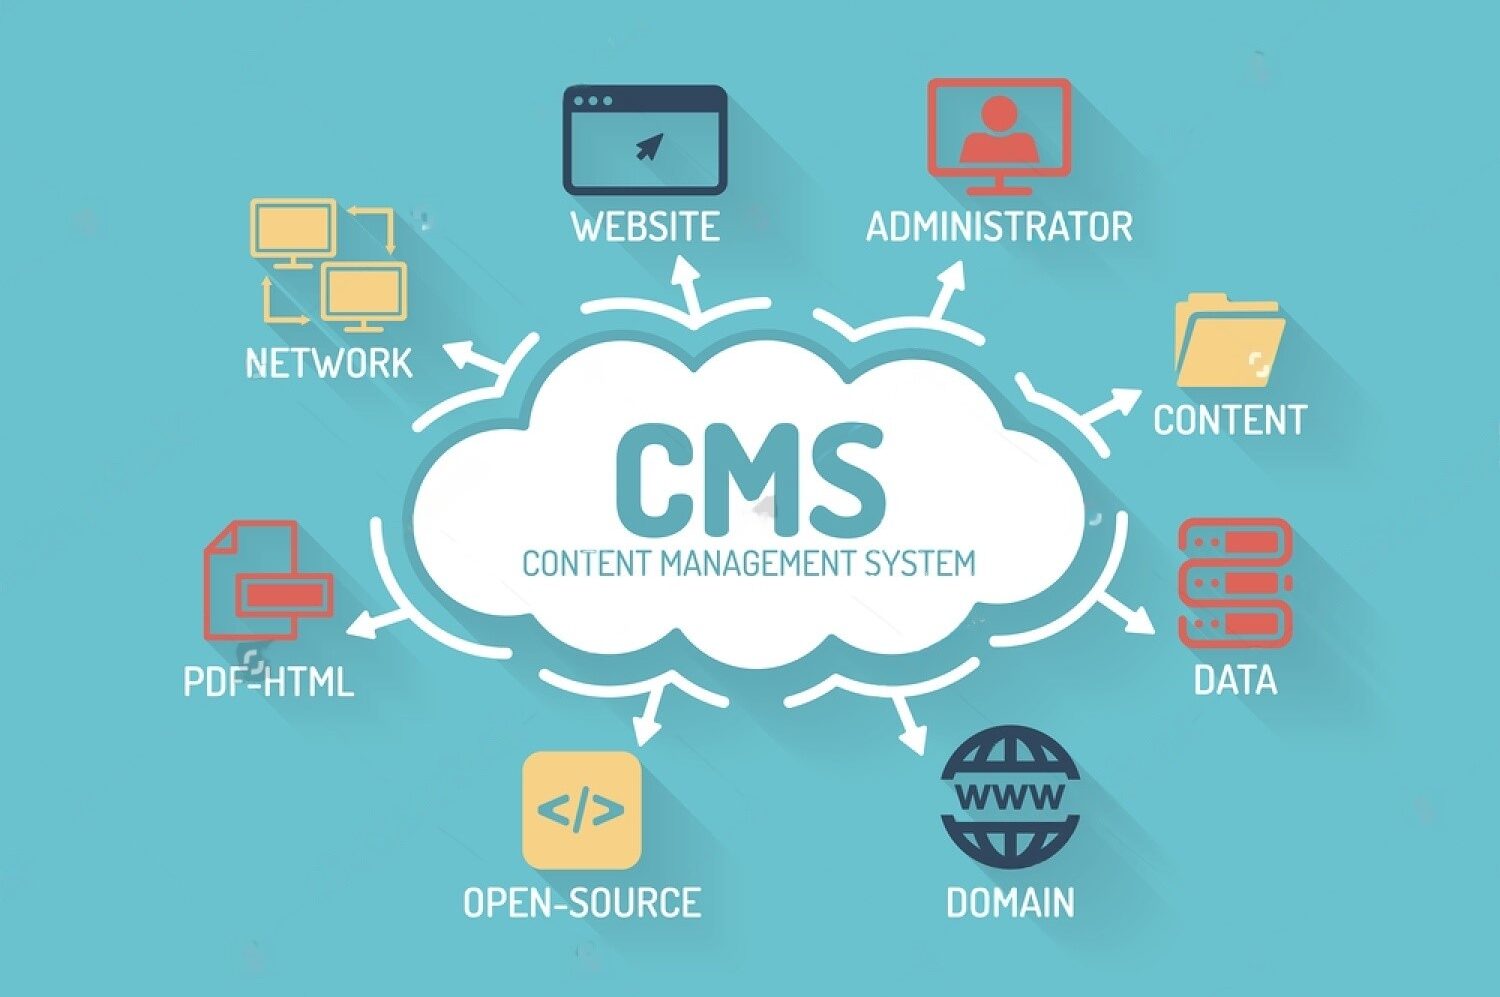 Professional CMS service for efficient content management